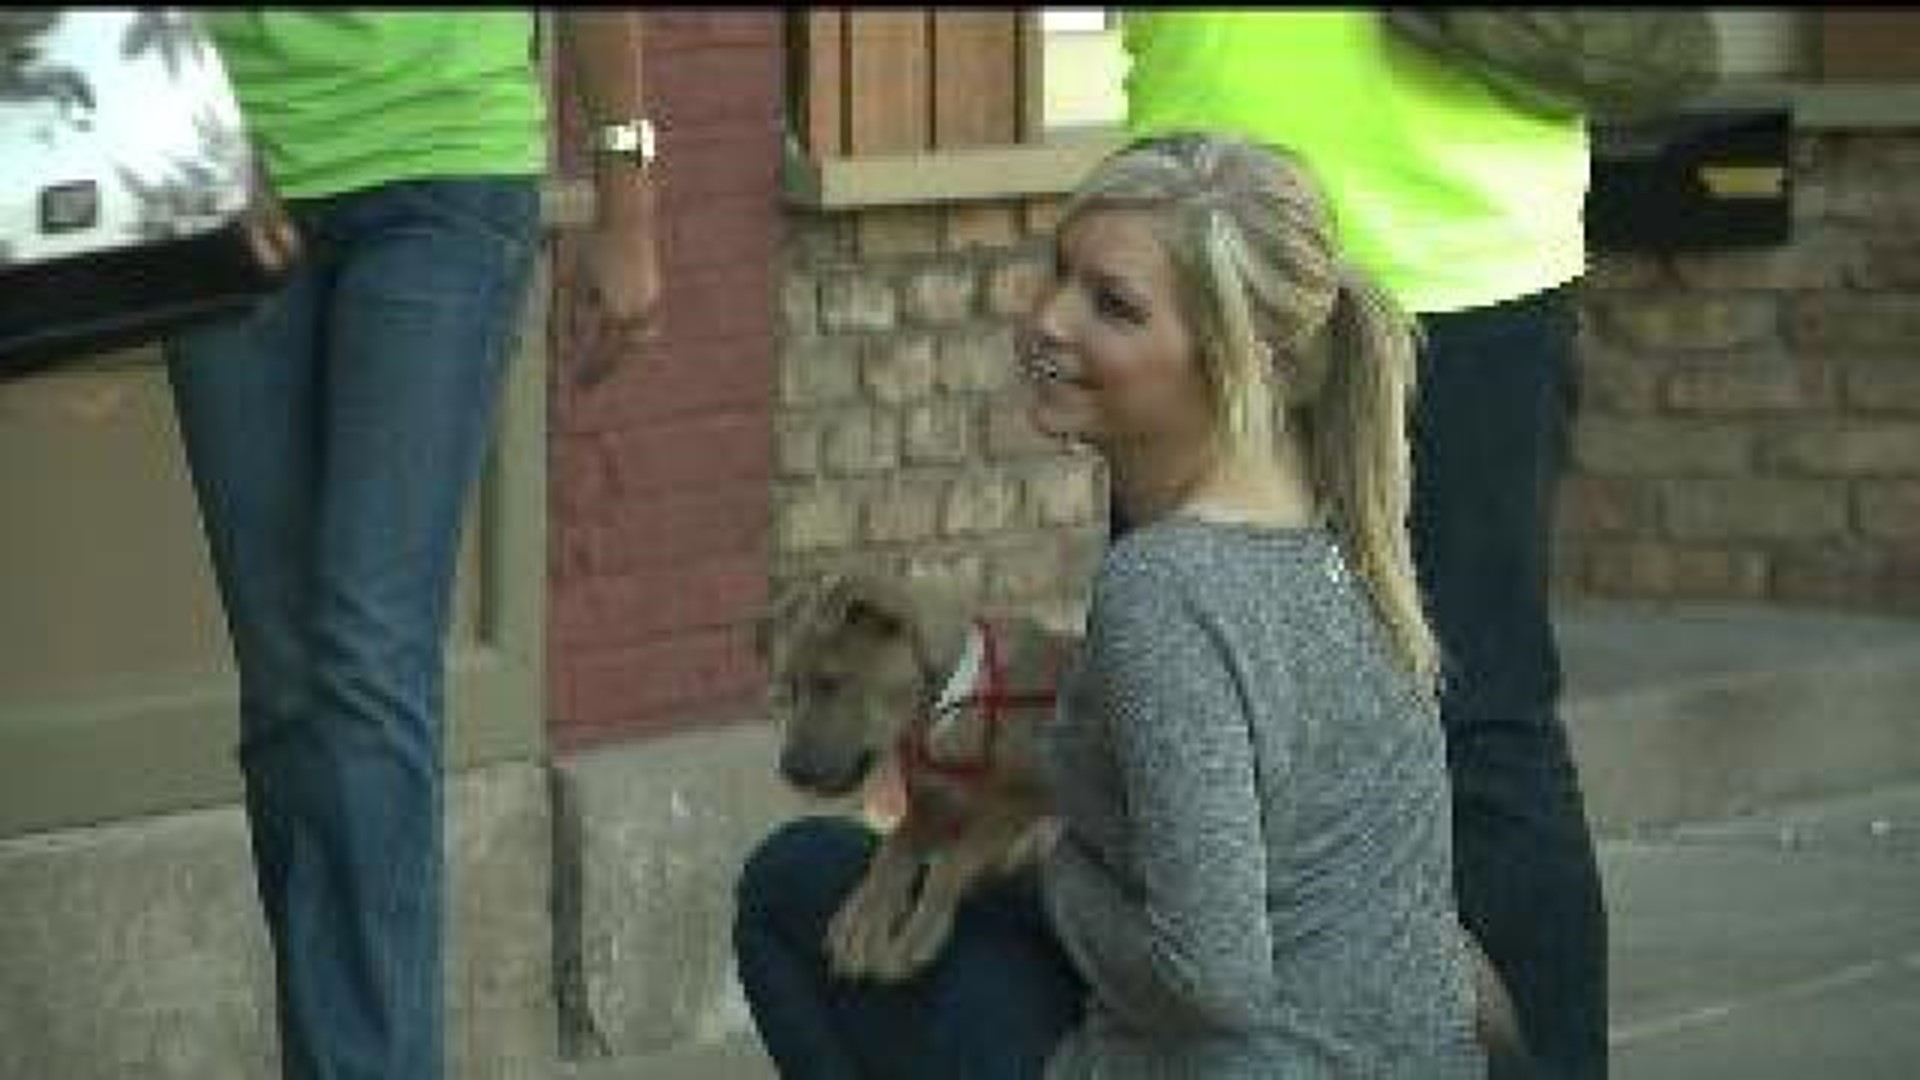 Animal shelter holds bar crawl to raise adoption awareness